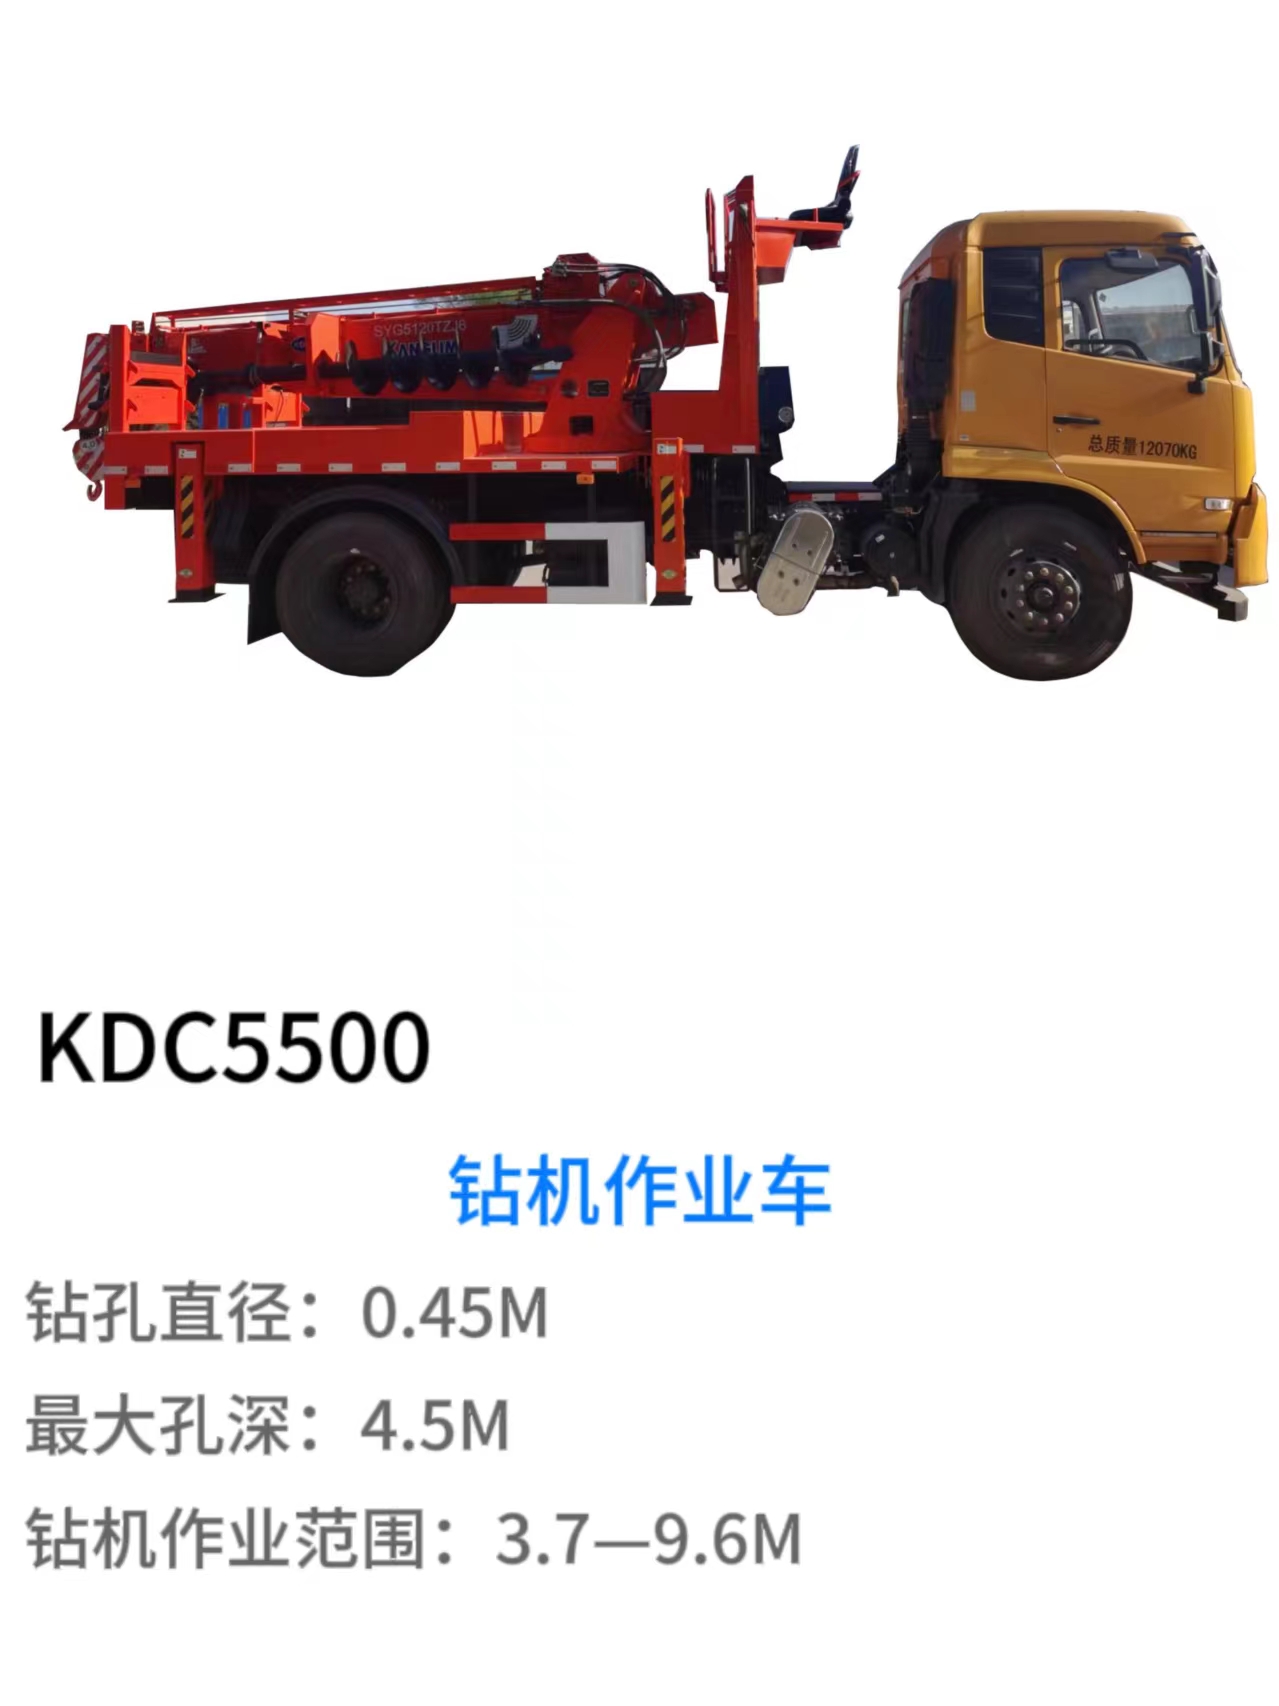 KDC5500钻机作业车